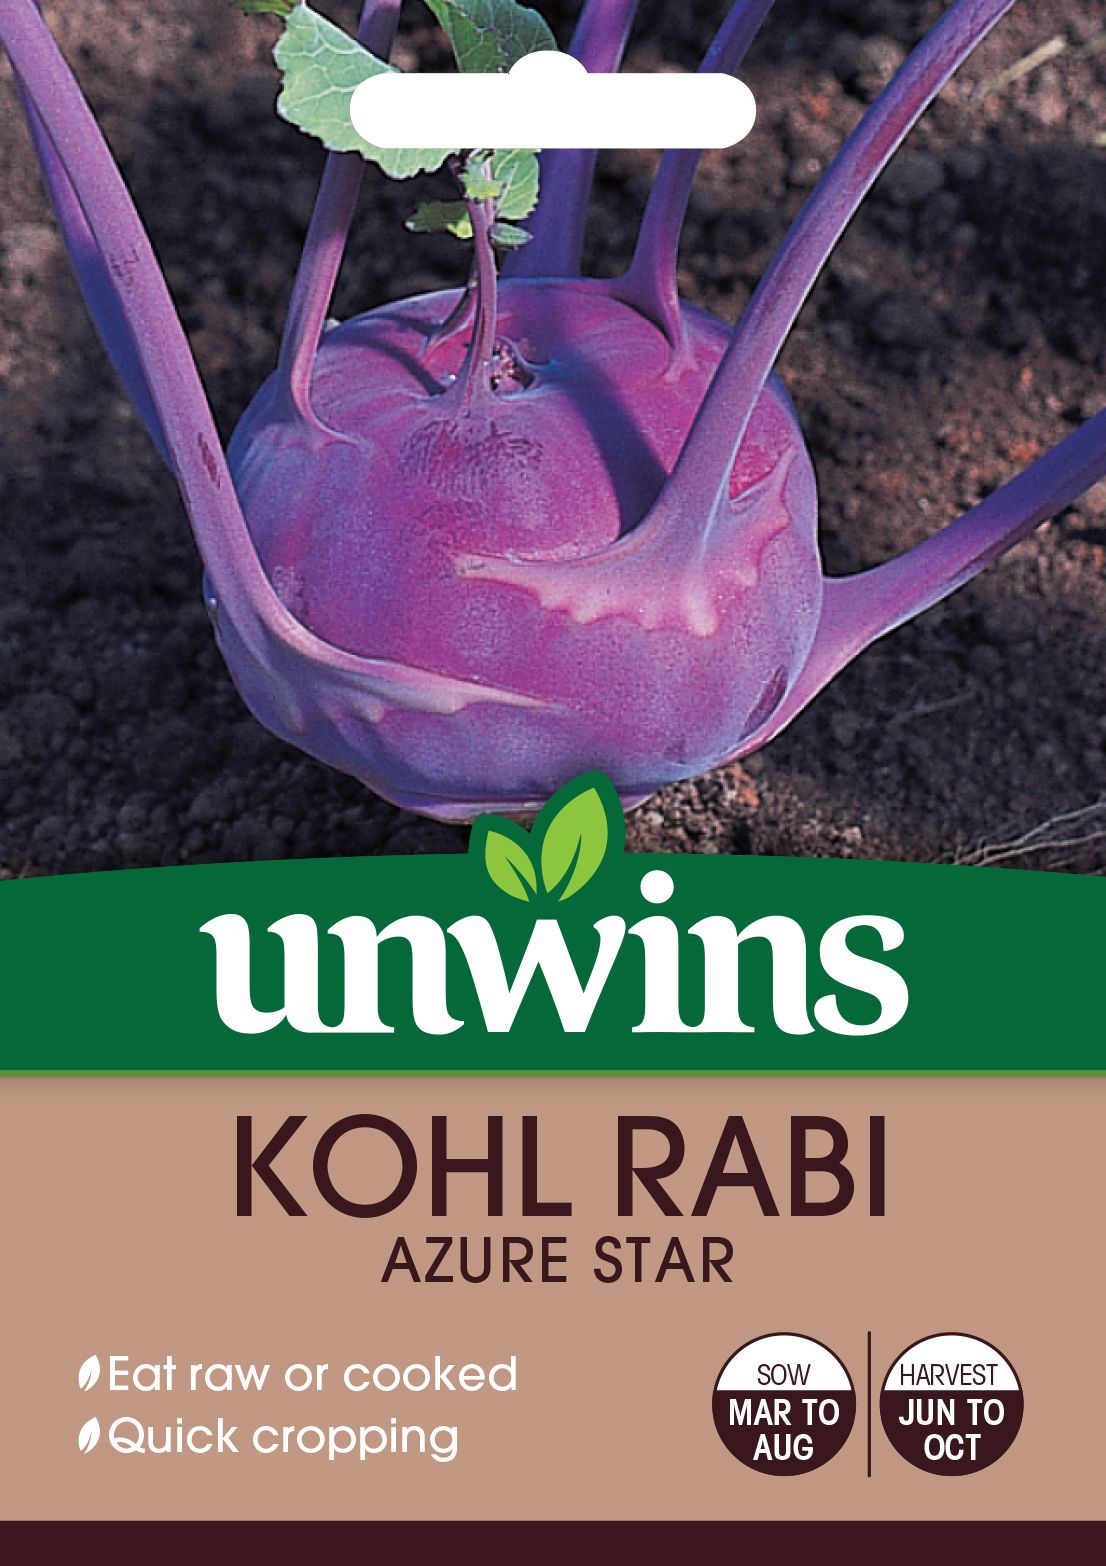 Kohl Rabi Azure Star